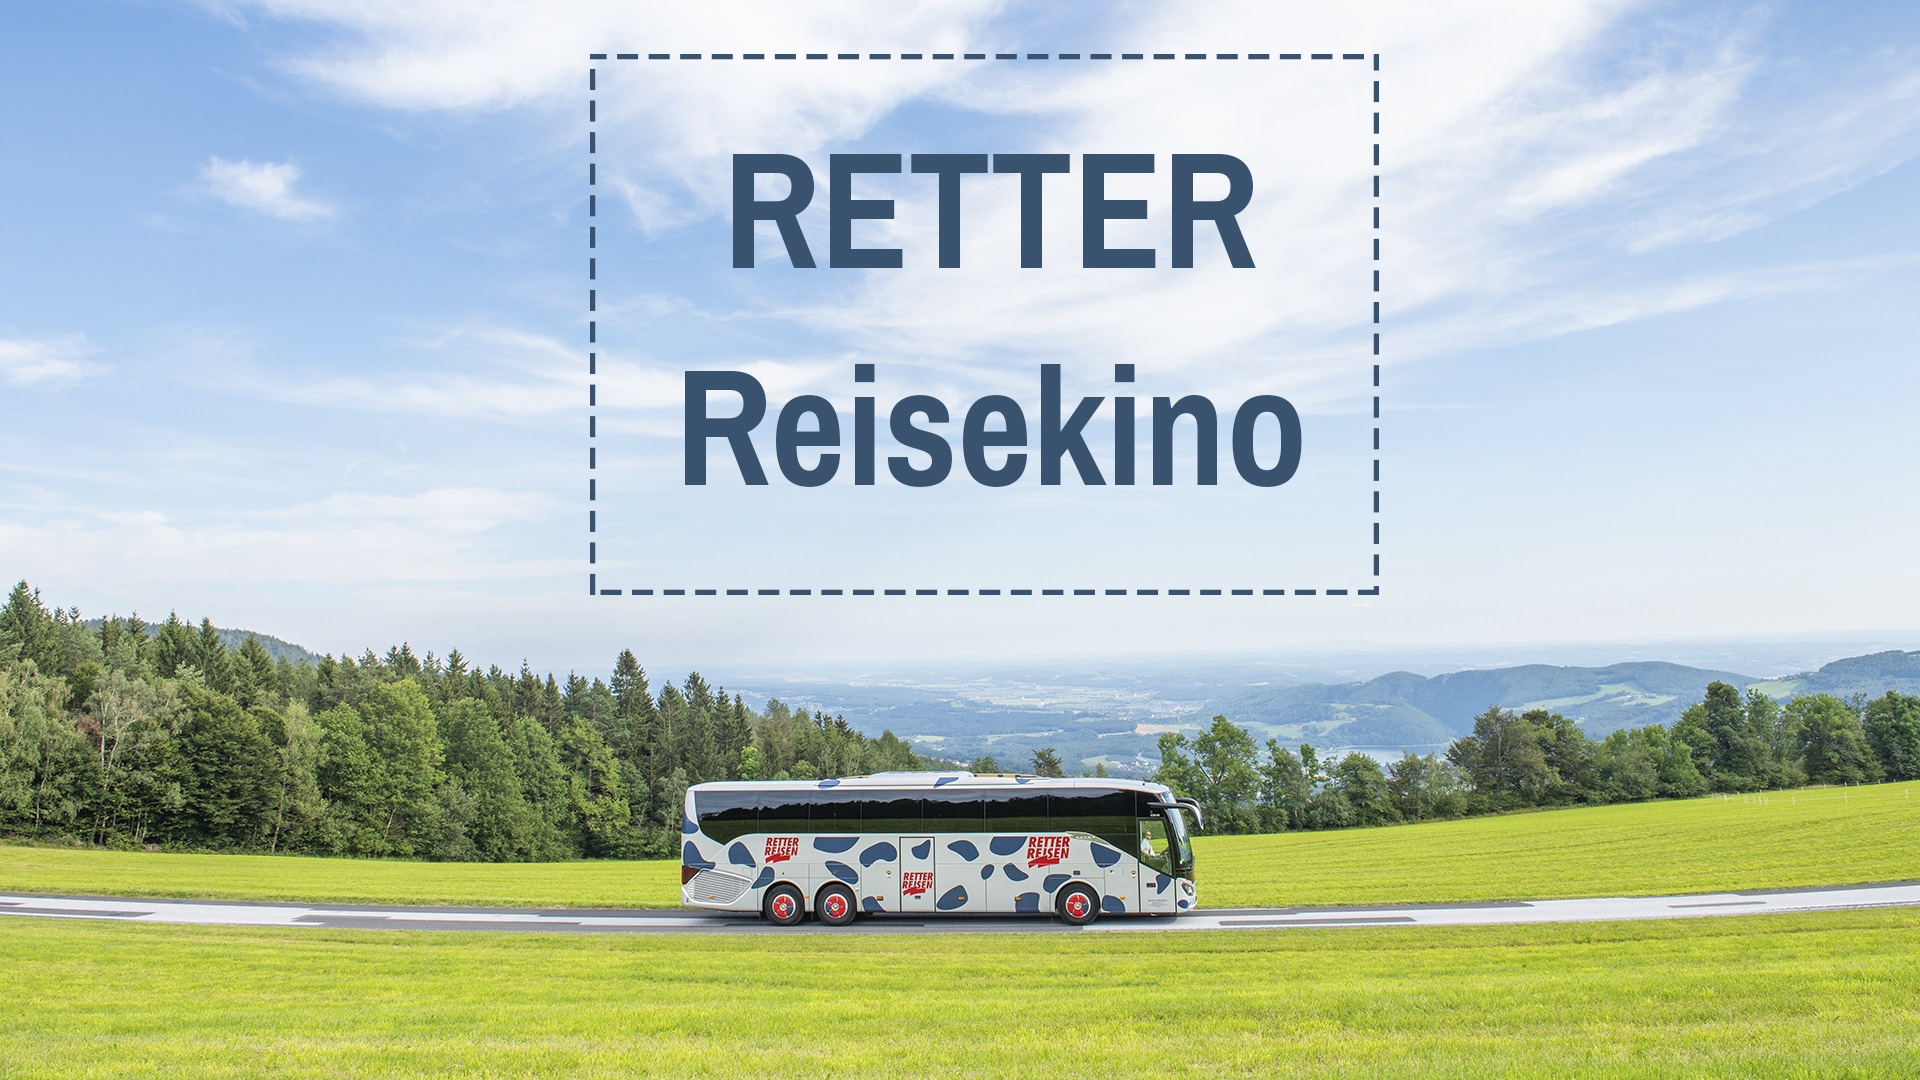 RETTER Reisekino